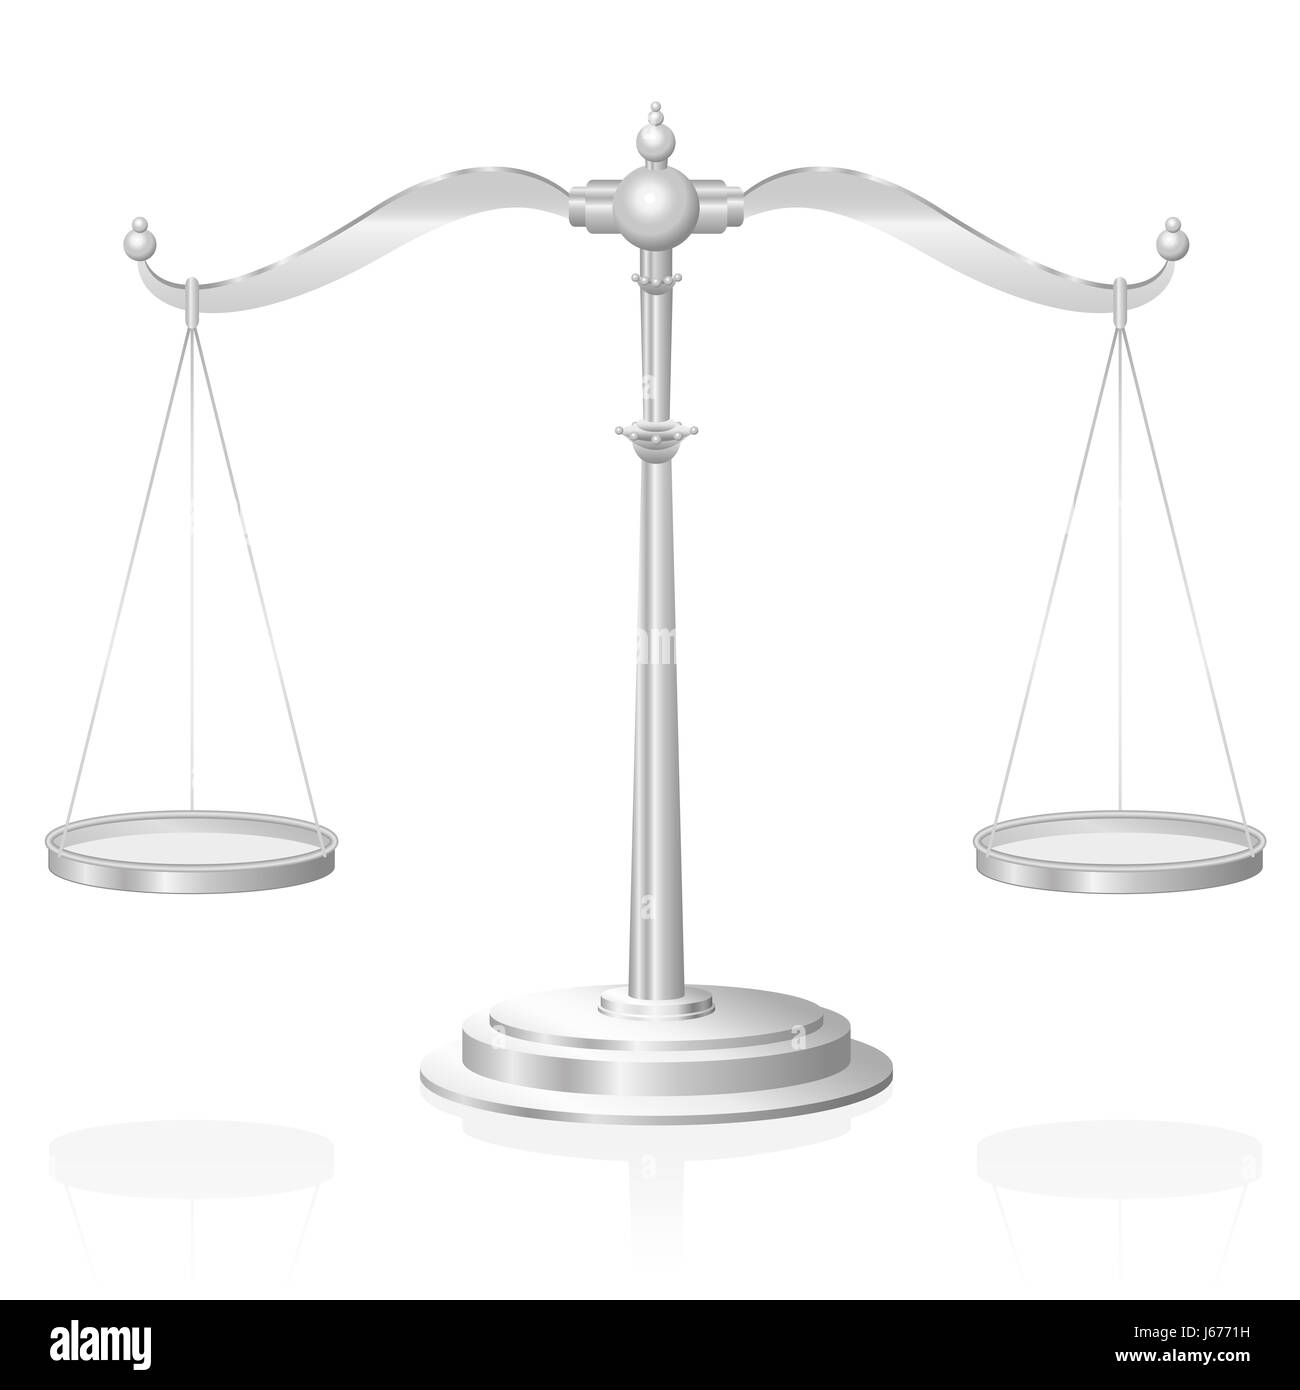 Waage - Symbol für Gerechtigkeit, Gerichtsbarkeit, Ausgewogenheit und Fairness - Abbildung auf weißem Hintergrund. Stockfoto